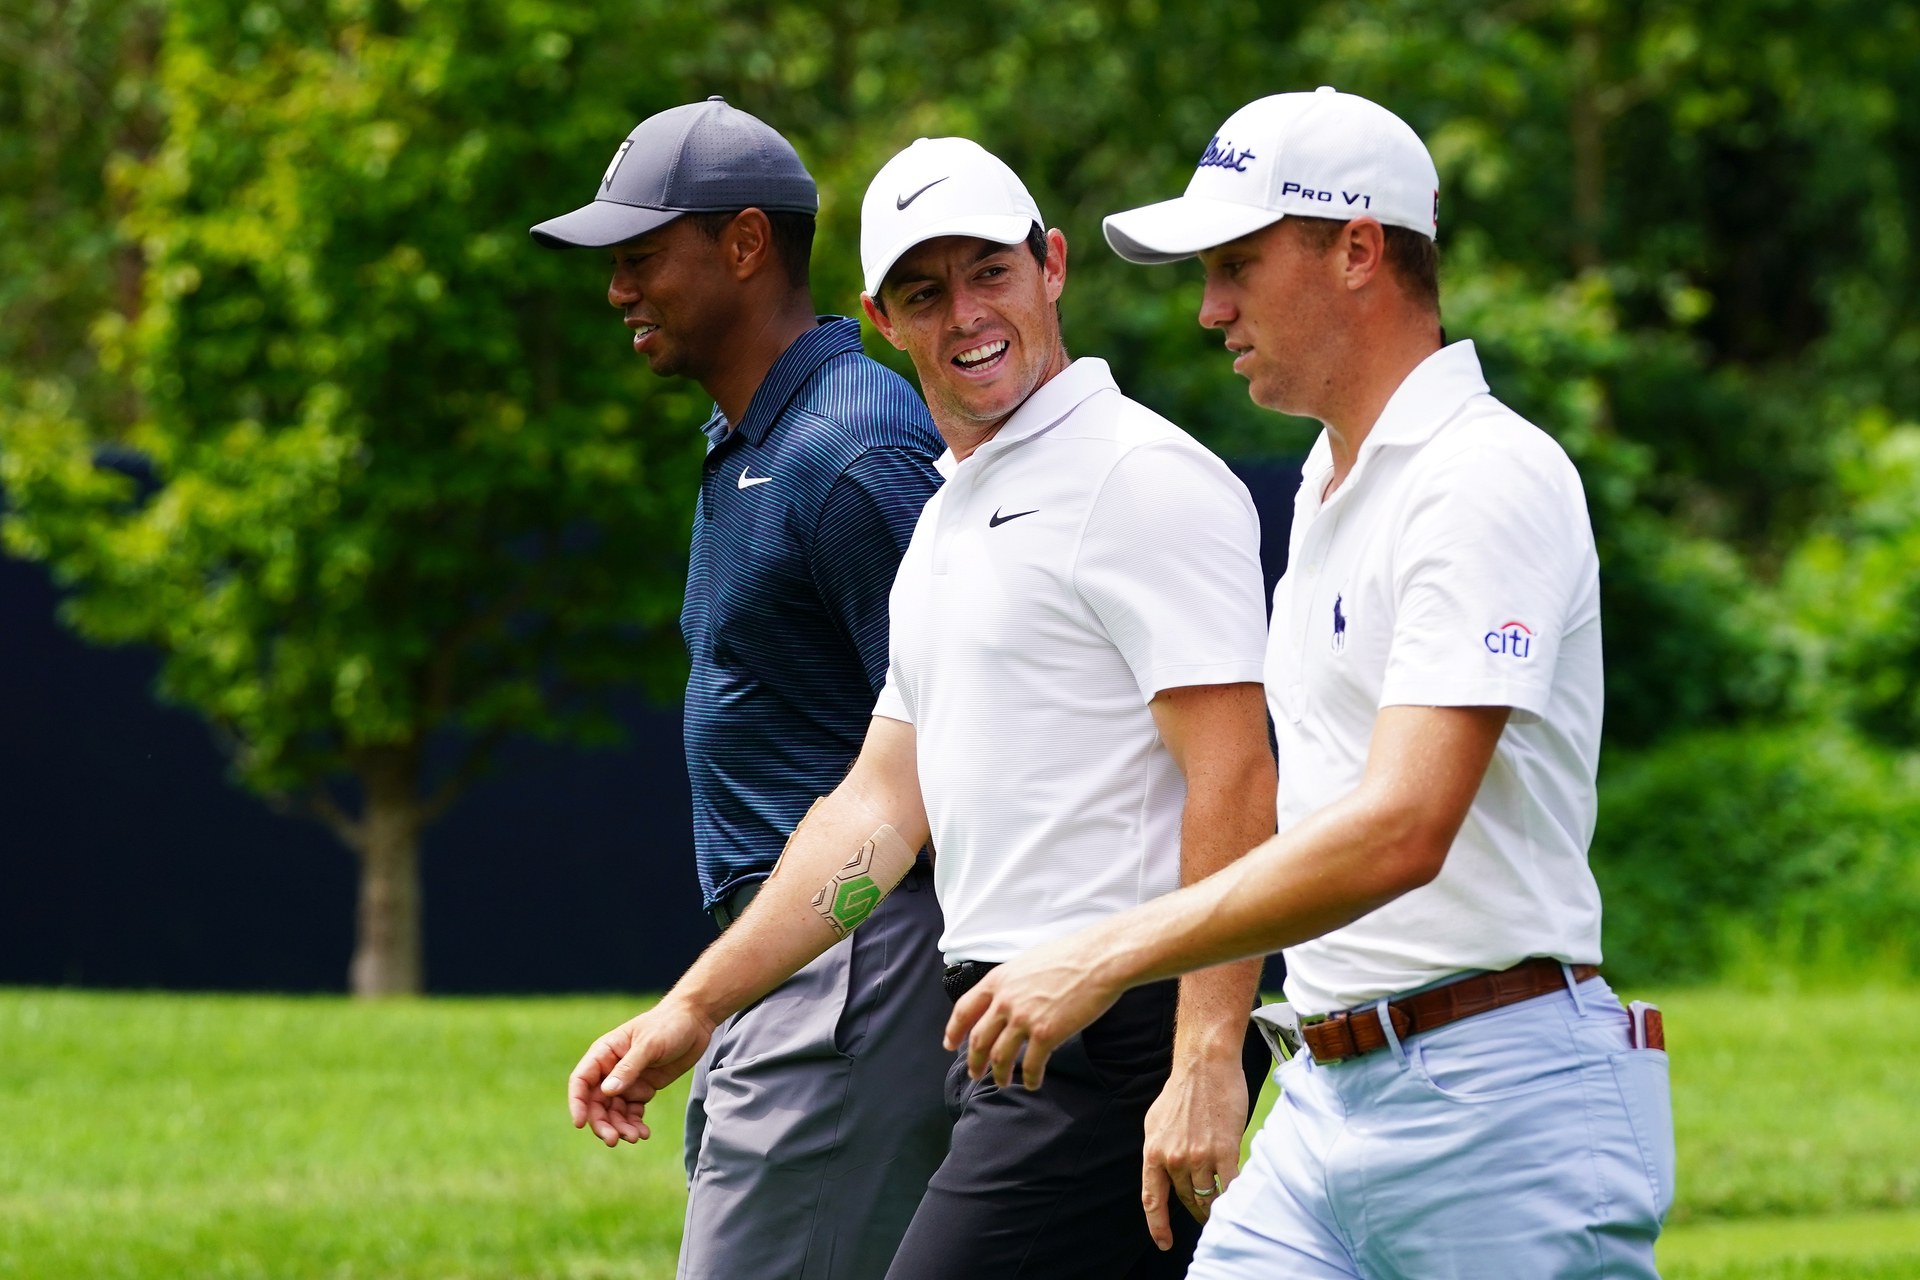 Tiger Woods khởi đầu Genesis Open 2019 cùng 2 golfer giàu kinh nghiệm